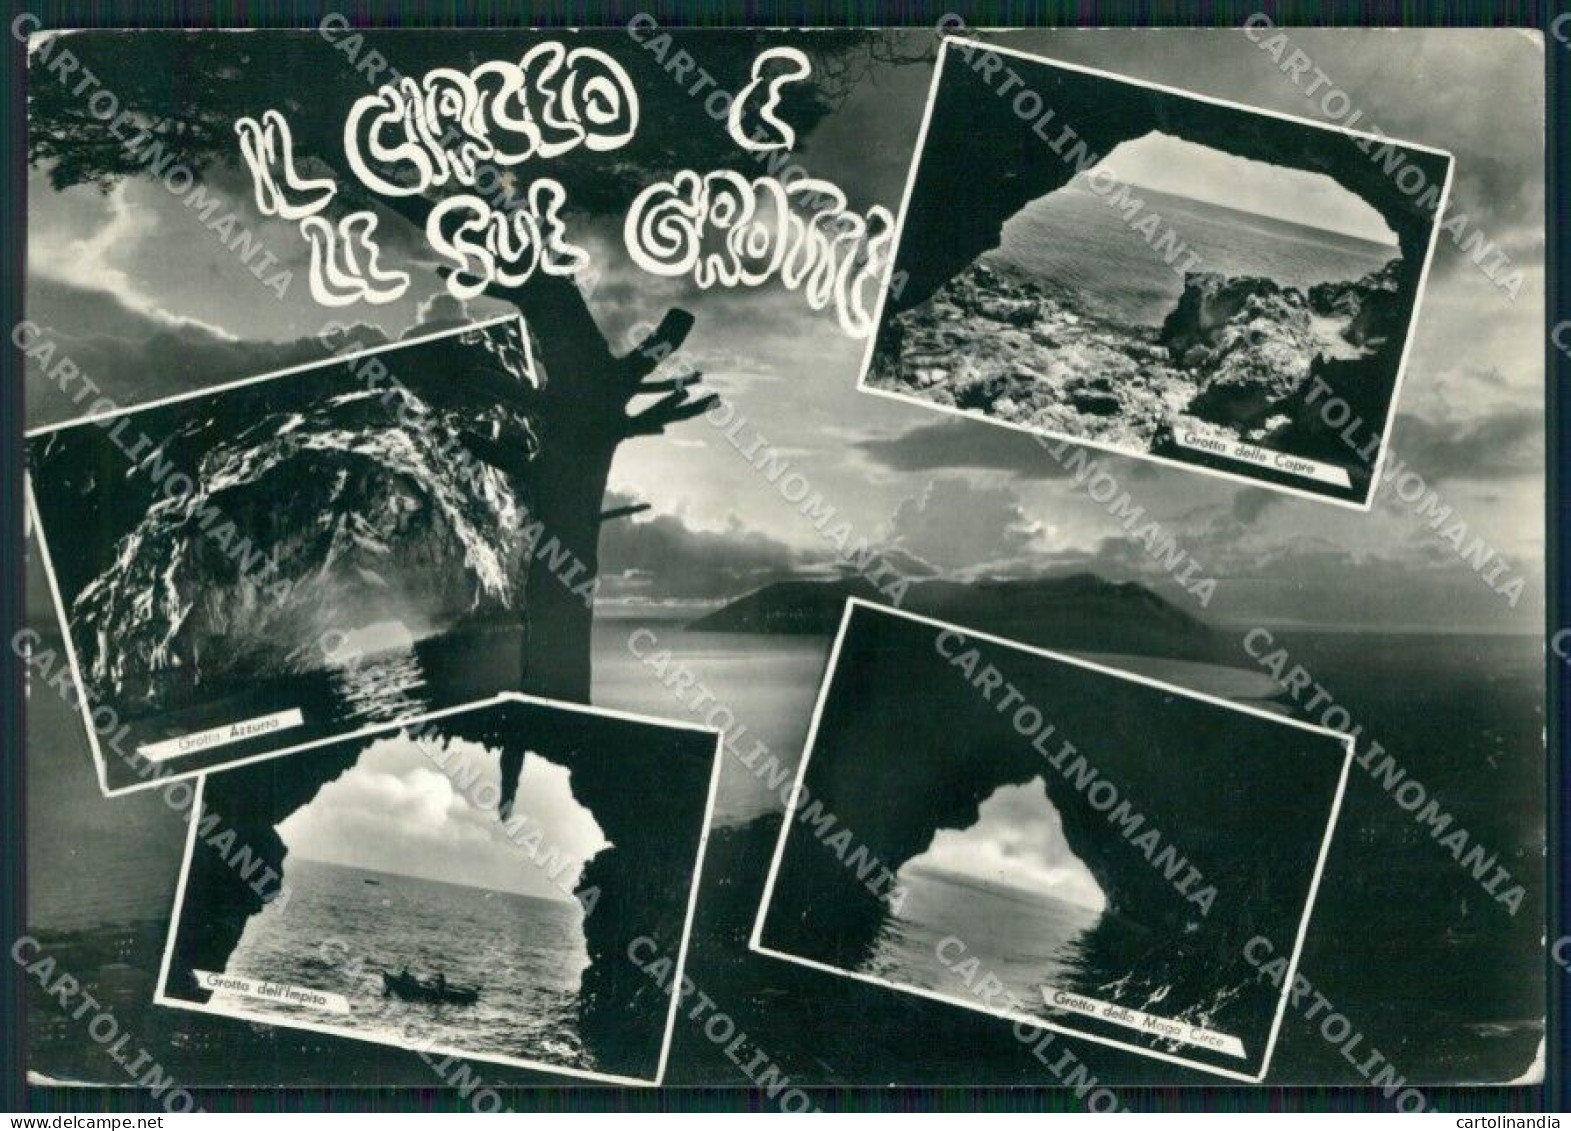 Latina San Felice Circeo Grotte Foto FG Cartolina ZK5236 - Latina